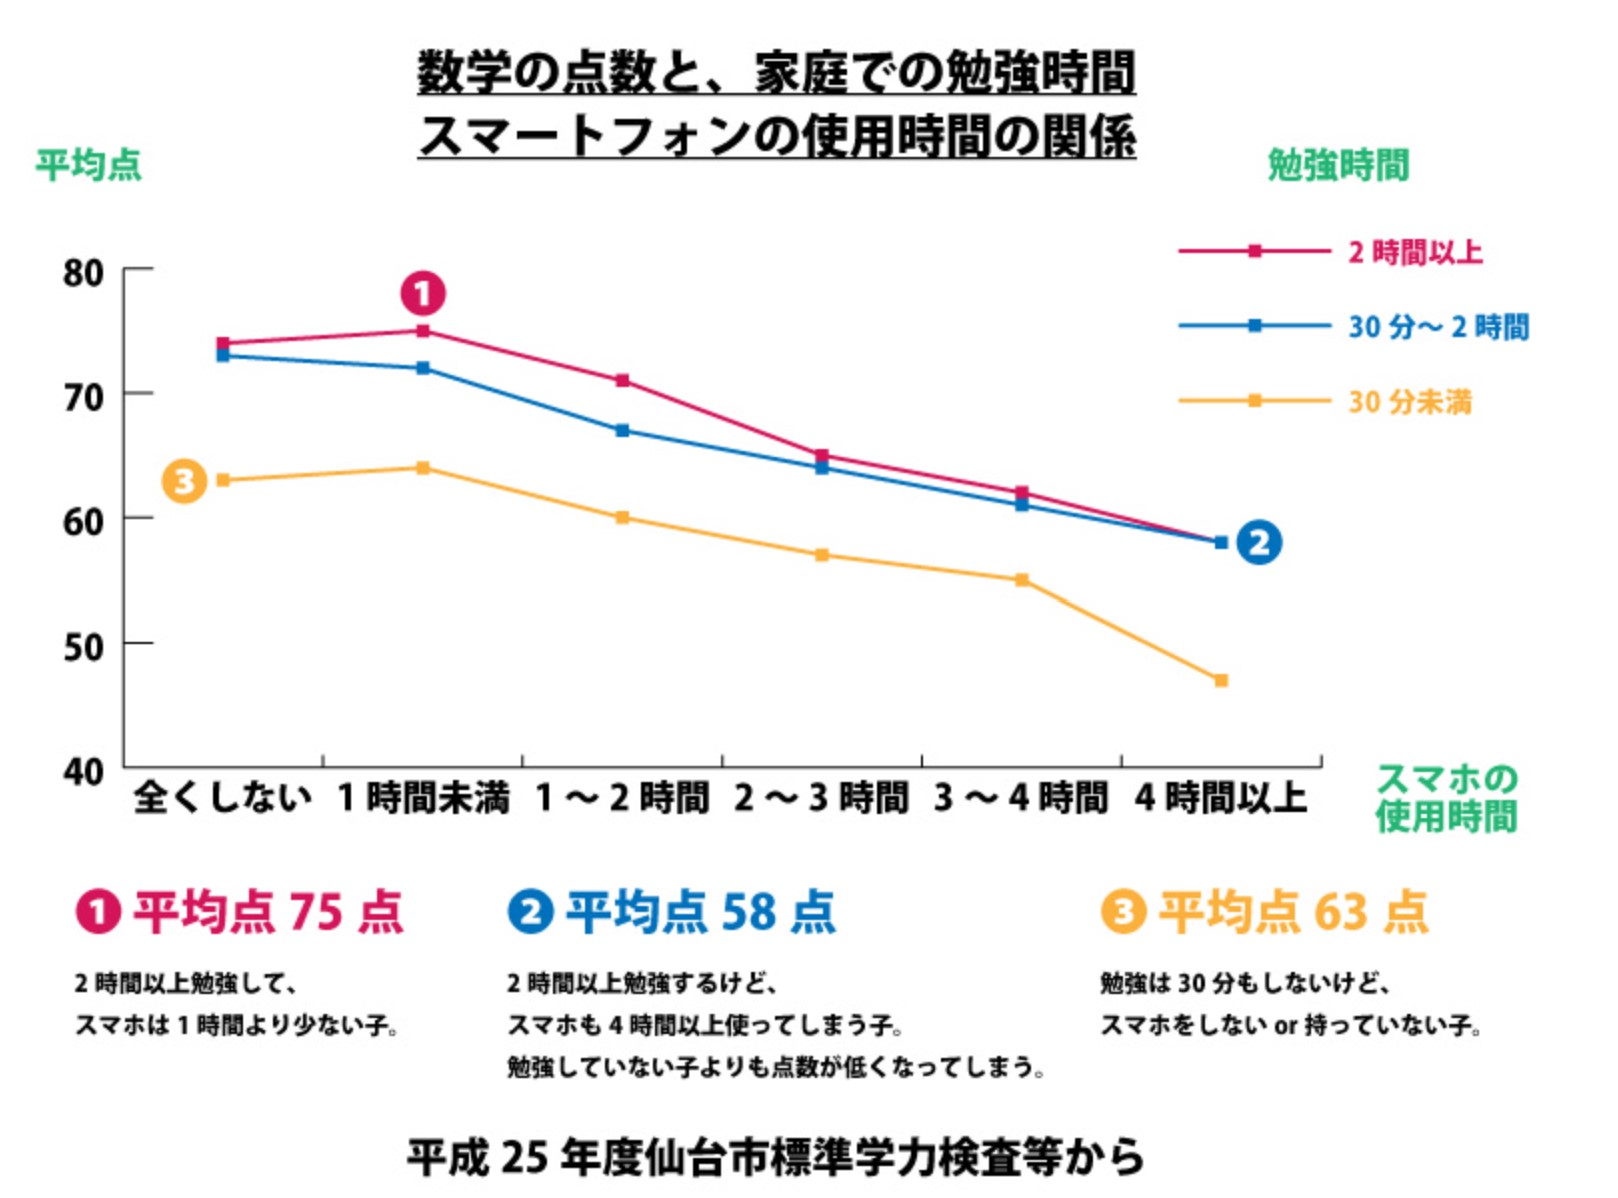 スマホの使用時間と成績はほぼ反比例する_東北大学と仙台市の標準学力検査等の結果_スマホの使用時間と成績はマイナスの相関が強い